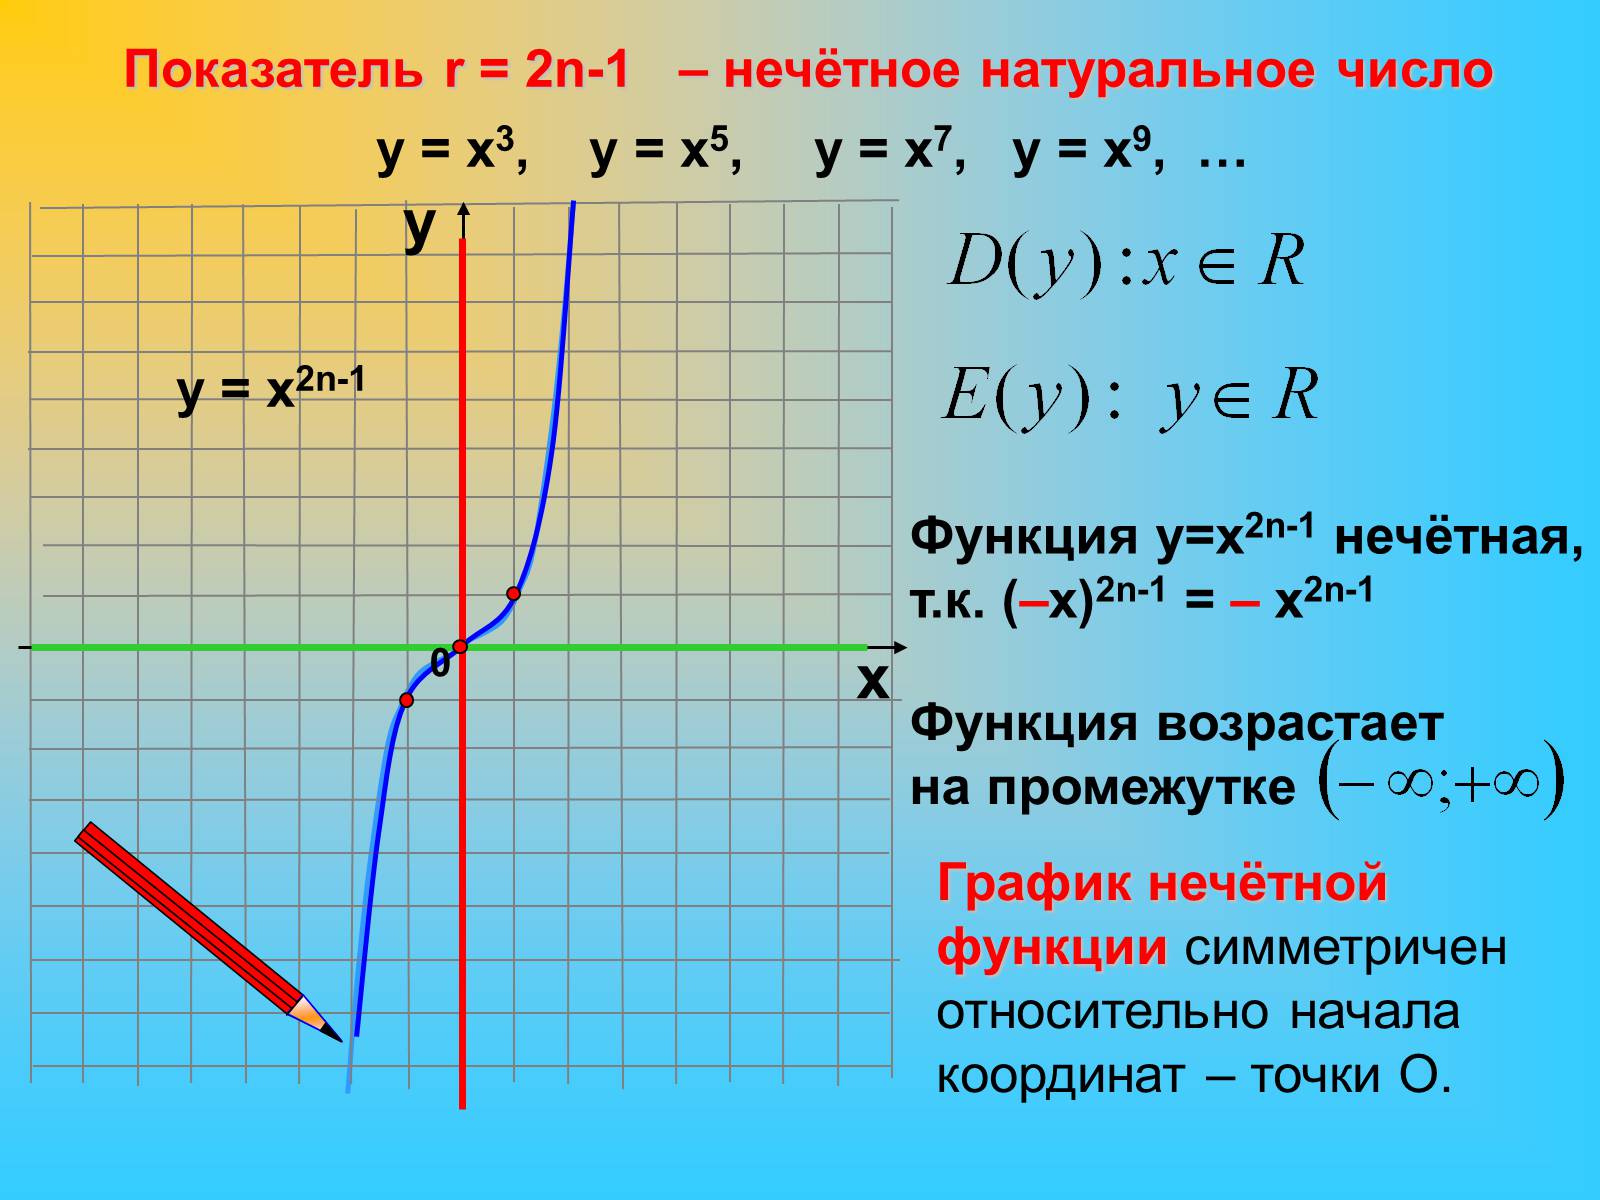 Функция y x c является. График функции у = х2n называют ... N-Й степени.. Функция 3 в степени х. Функция 2 в степени х. Функция х в степени н.